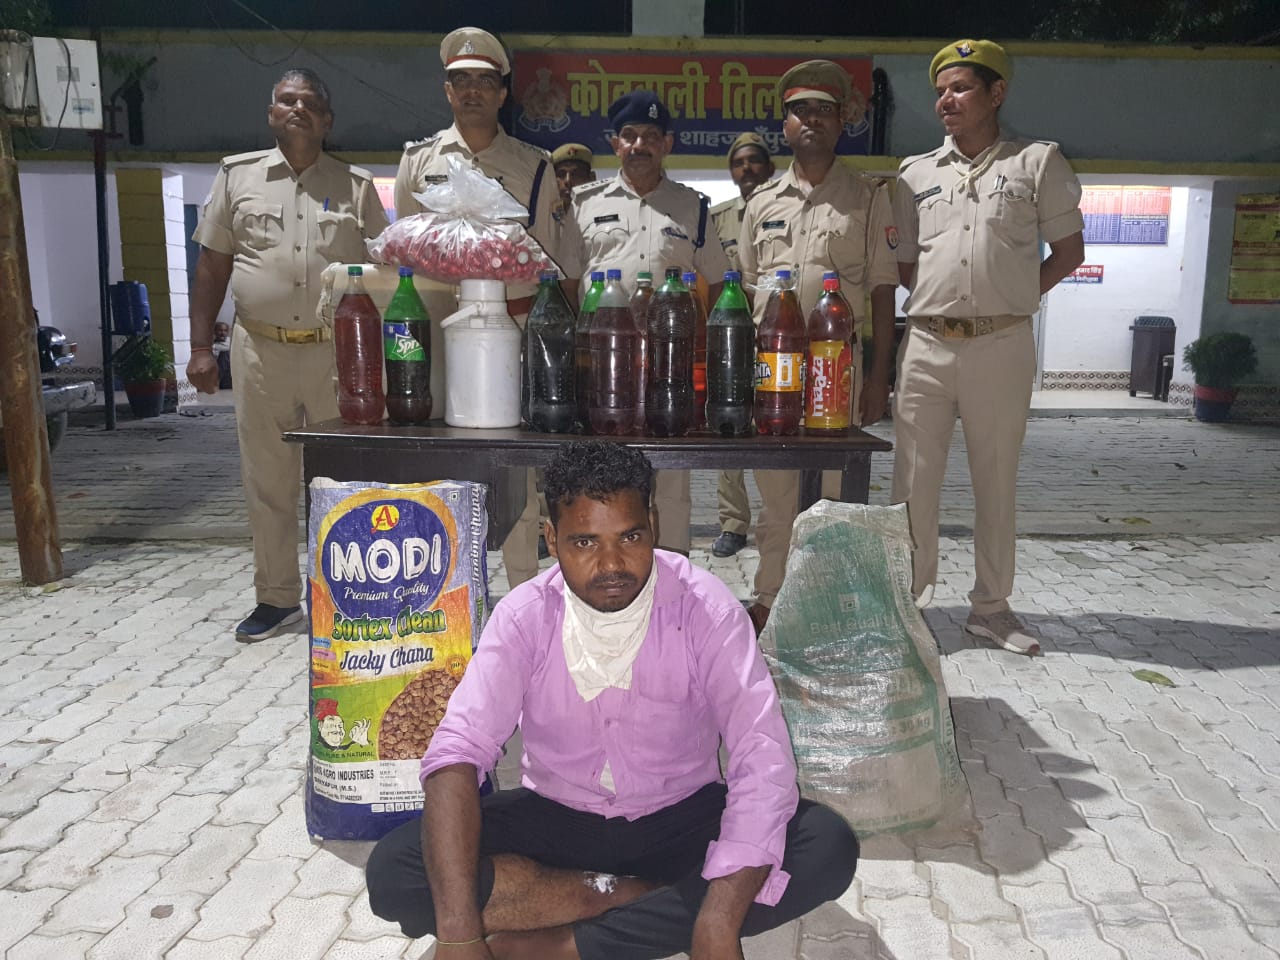 पुलिस व अबकारी विभाग की टीम ने देसी शराब के ठेके पर मारा छापा, अवैध शराब बरामद, एक आरोपी गिरफ्तार दो फरार | New India Times